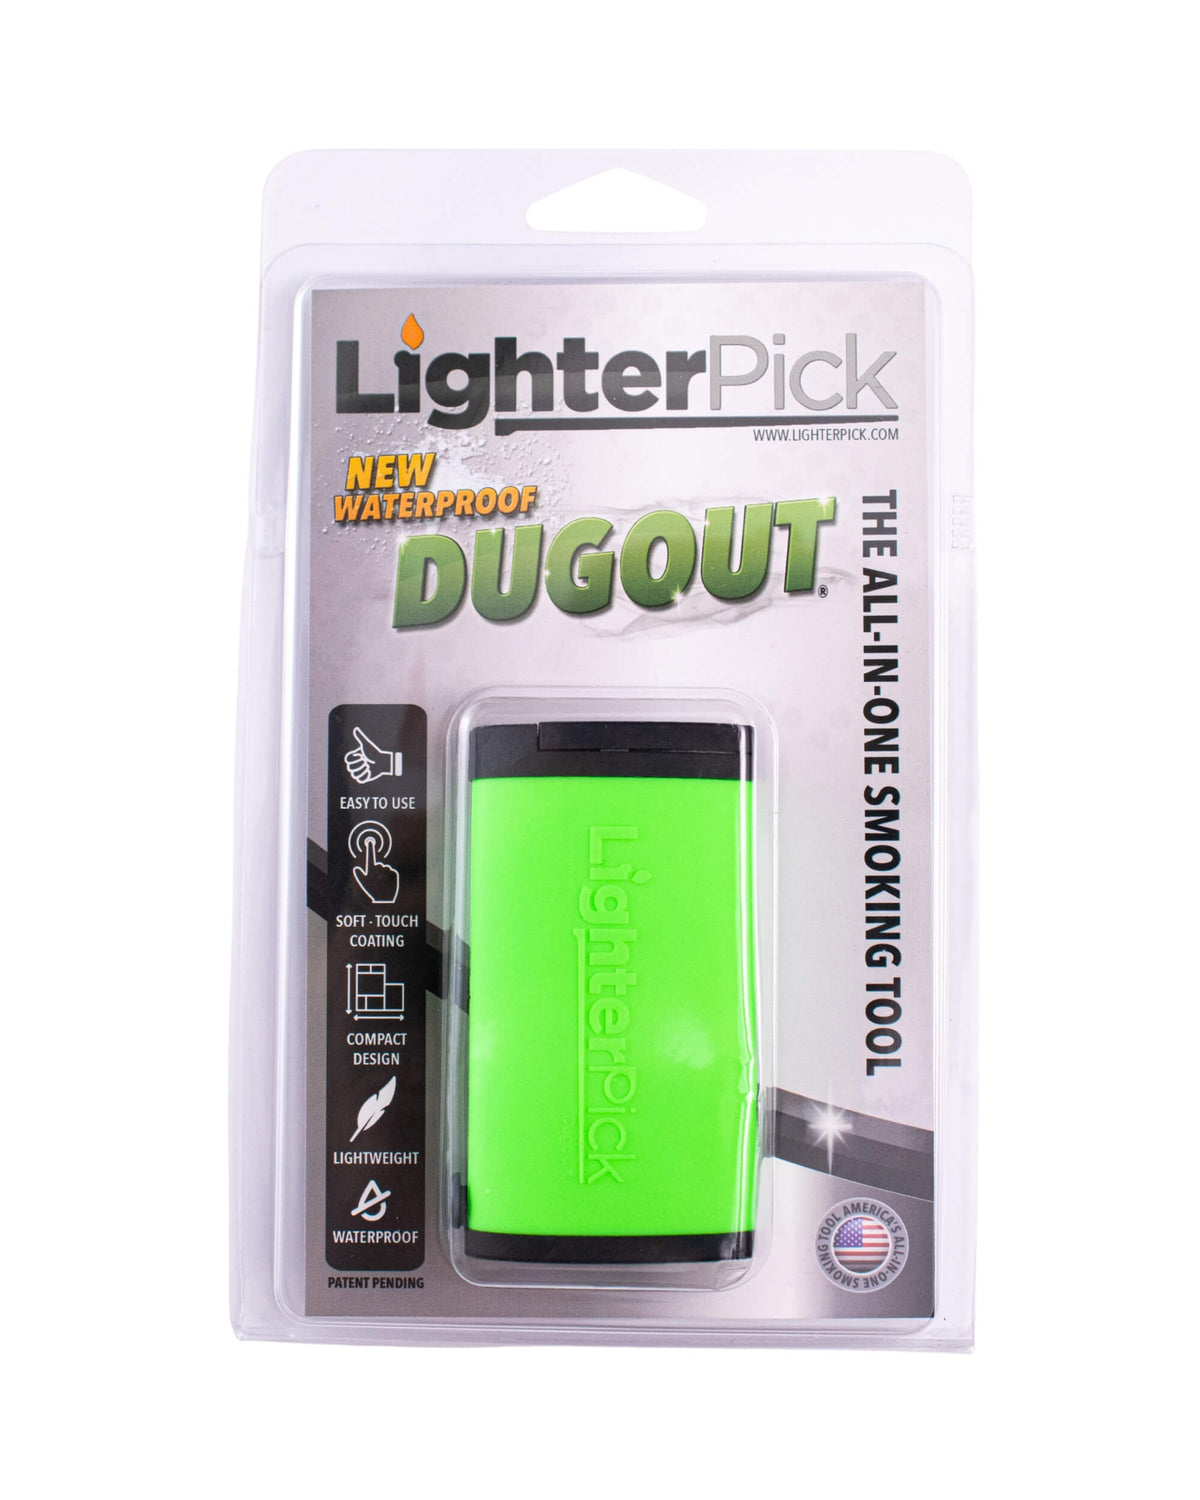 Waterproof Dugout - LighterPick LighterPick